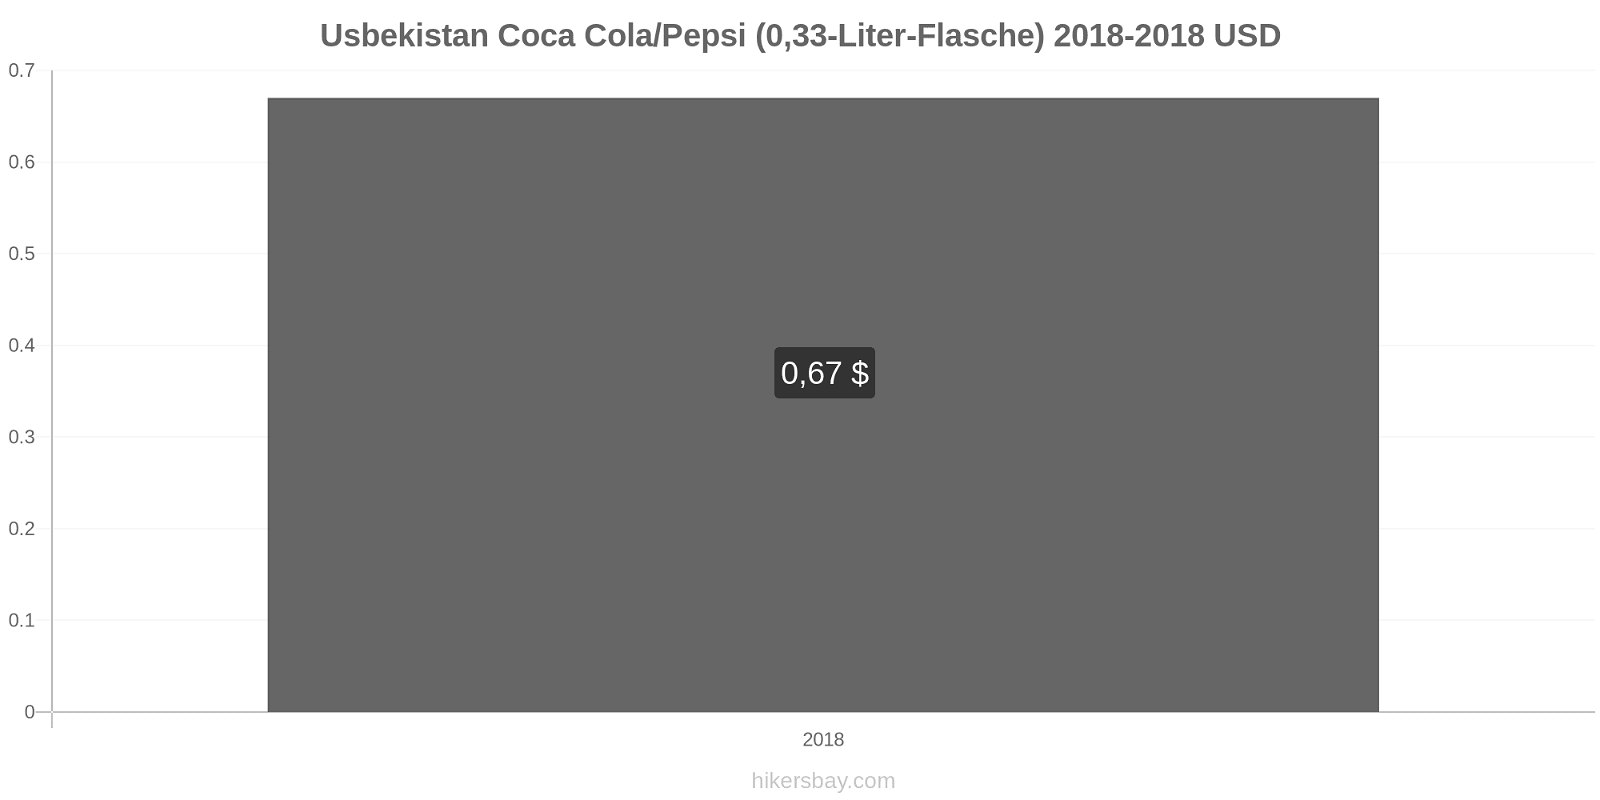 Usbekistan Preisänderungen Coke/Pepsi (0,33-Liter-Flasche) hikersbay.com